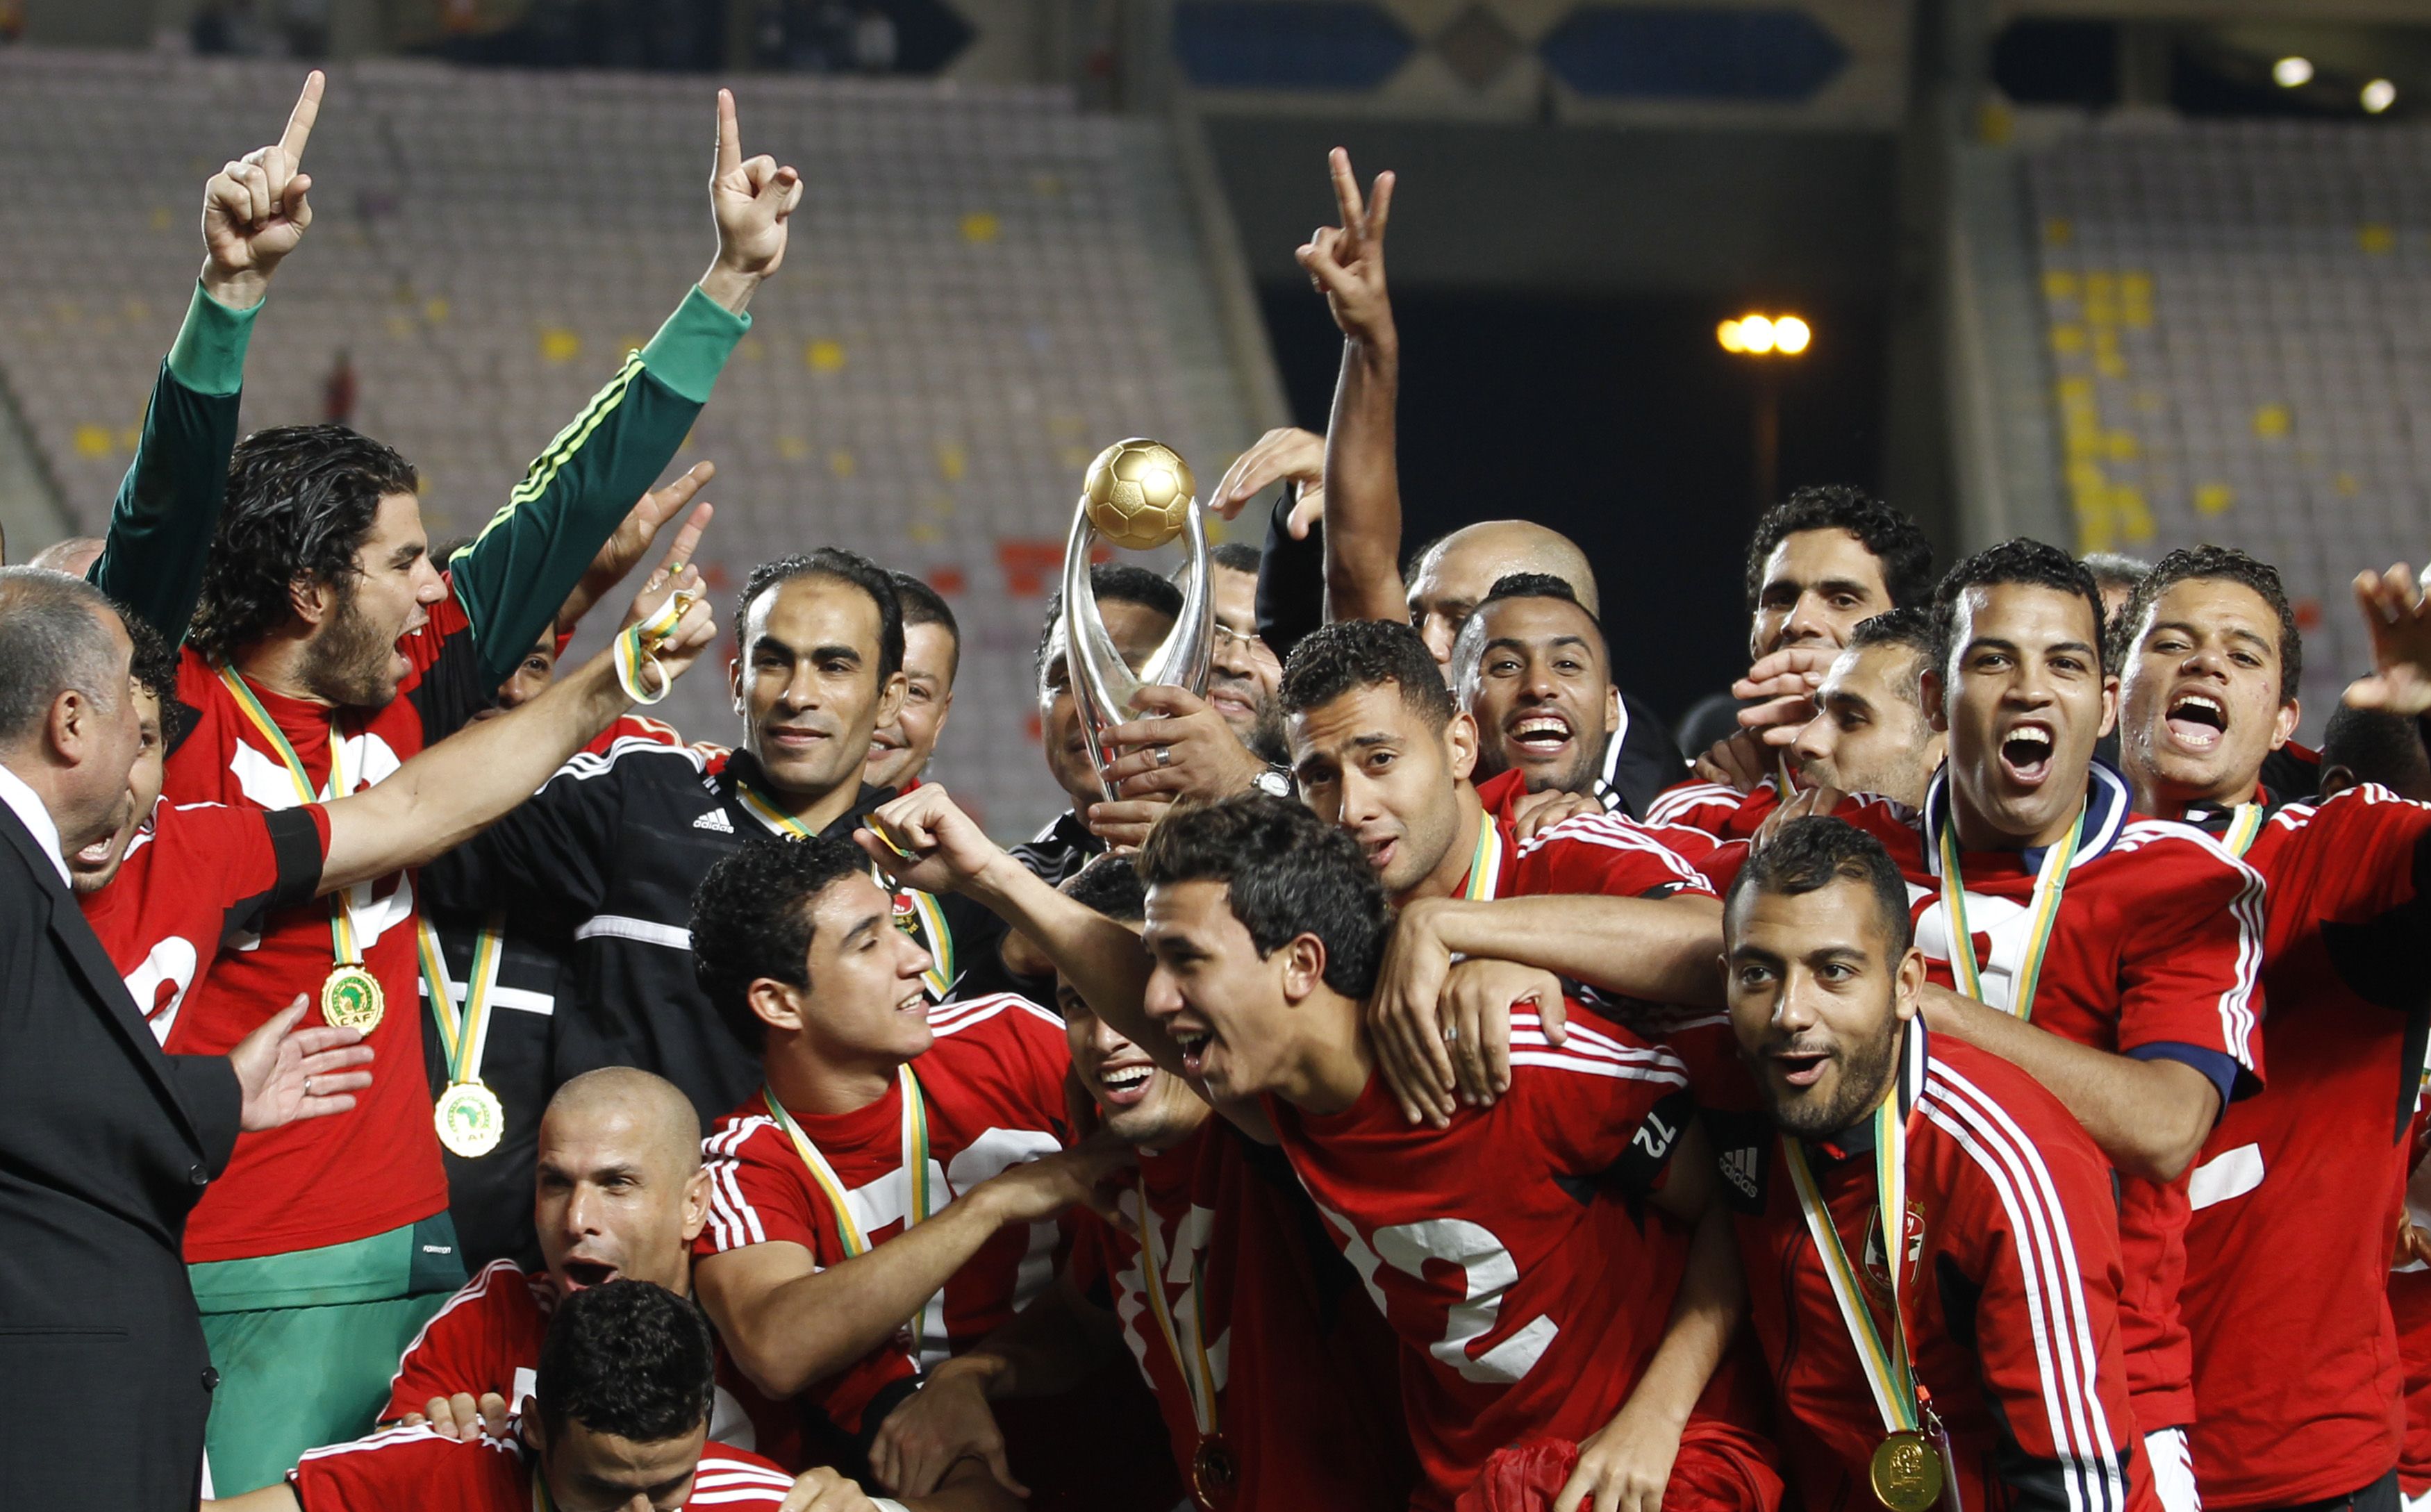 Da ist sie wieder, die 72. Sie wollten die Toten von Port Said mit dem Gewinn der Champions League ehren. Und sie haben es geschafft. Spieler von Al Ahly feiern den Titelgewinn.